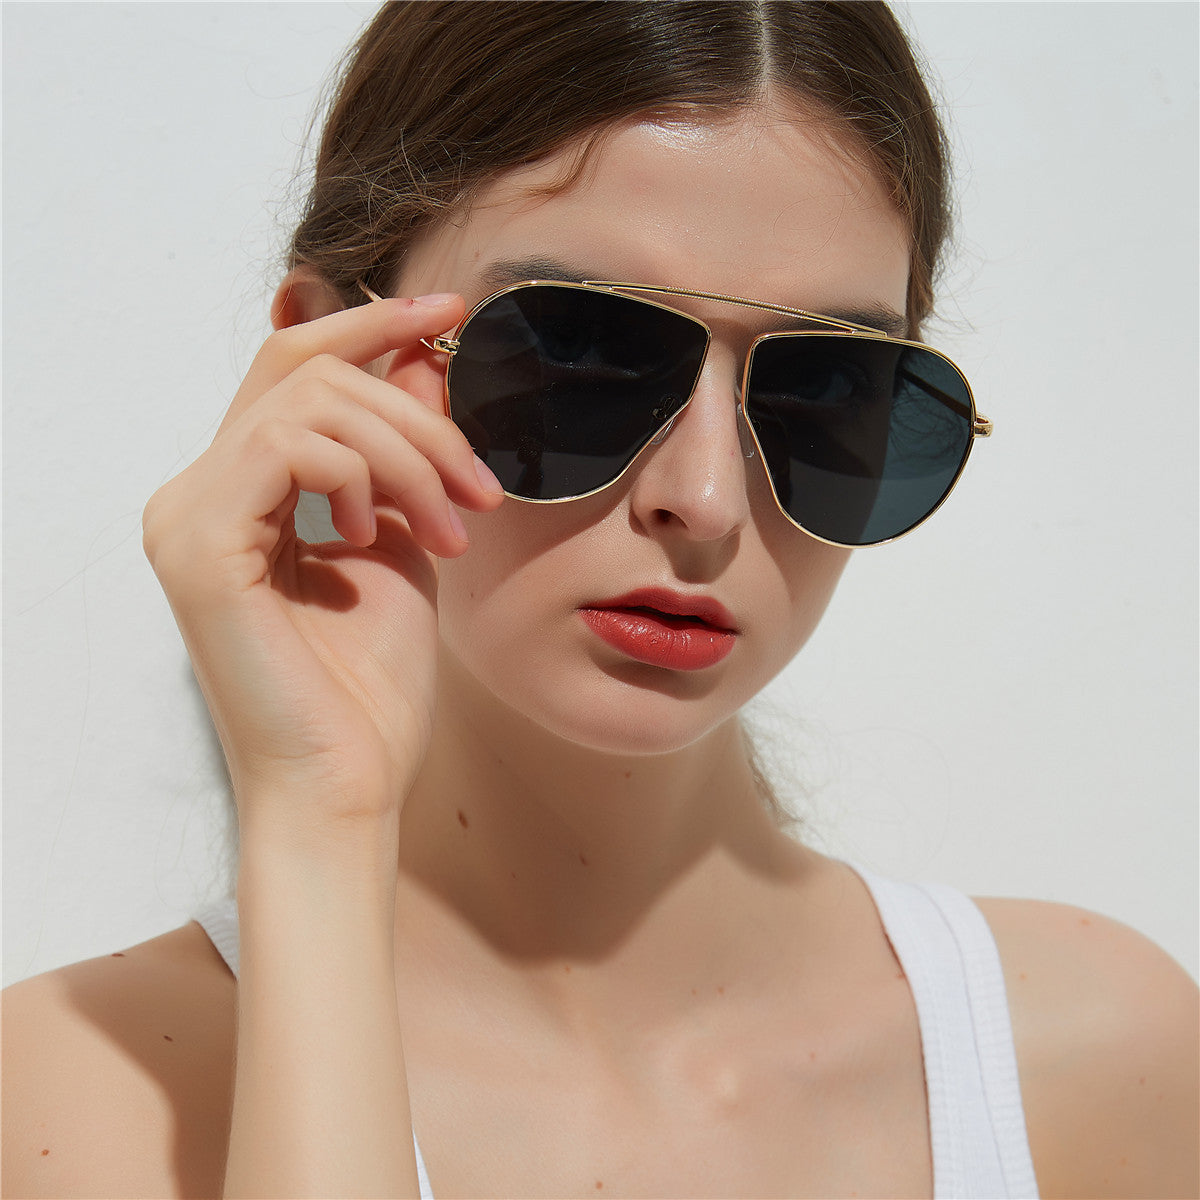 A1166 Polygonal Big Frame Sunglasses, Metal Frame Sunglasses For Women